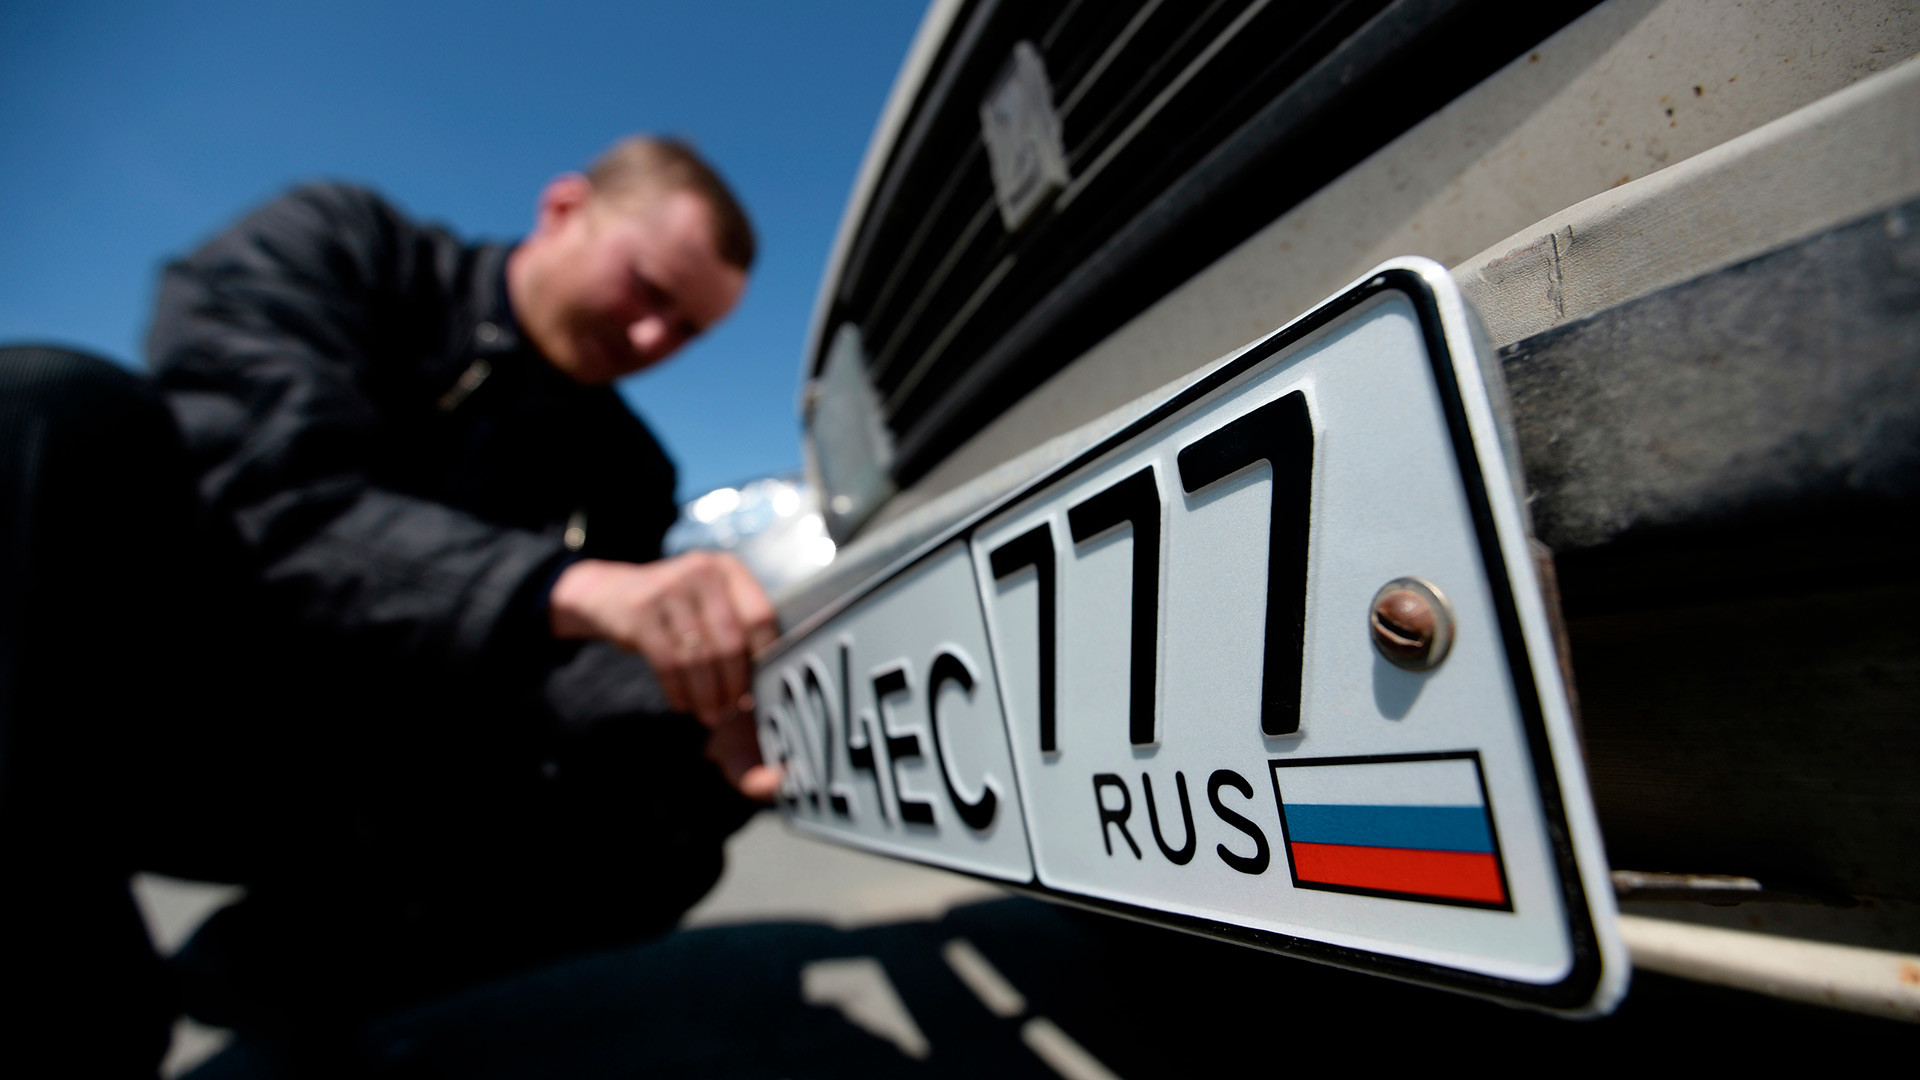 ロシアの車のナンバープレートを解読 そこに秘められたメッセージ ロシア ビヨンド